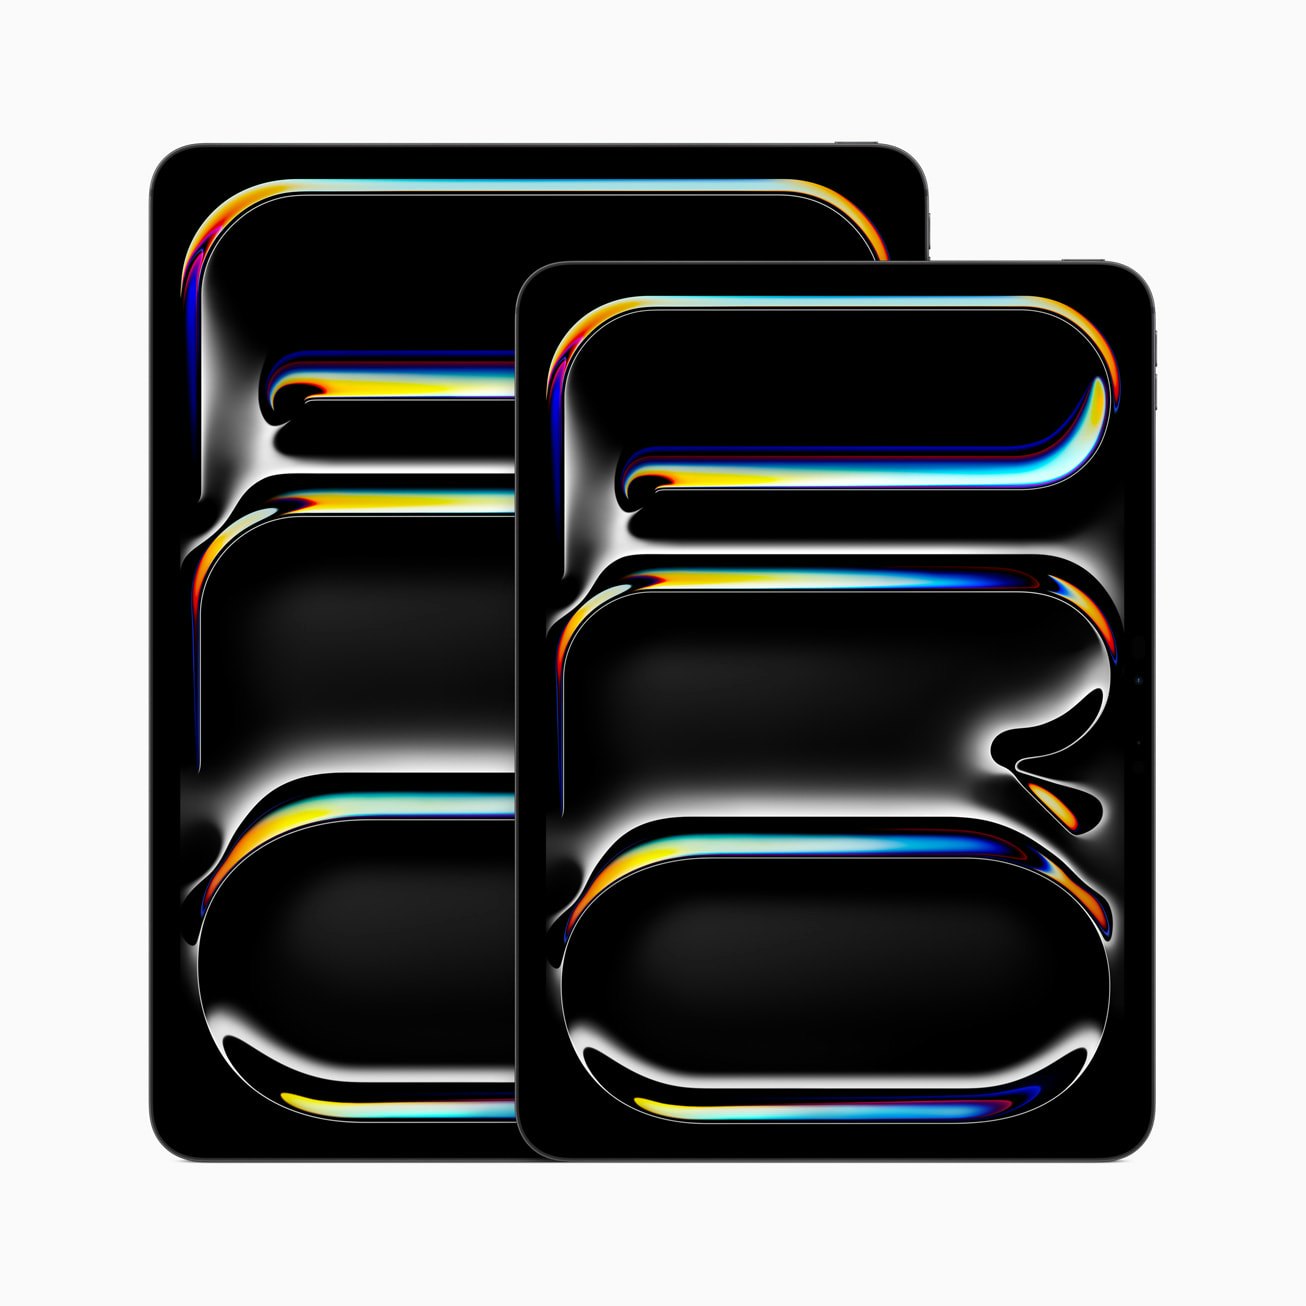 The New iPad Pro logo